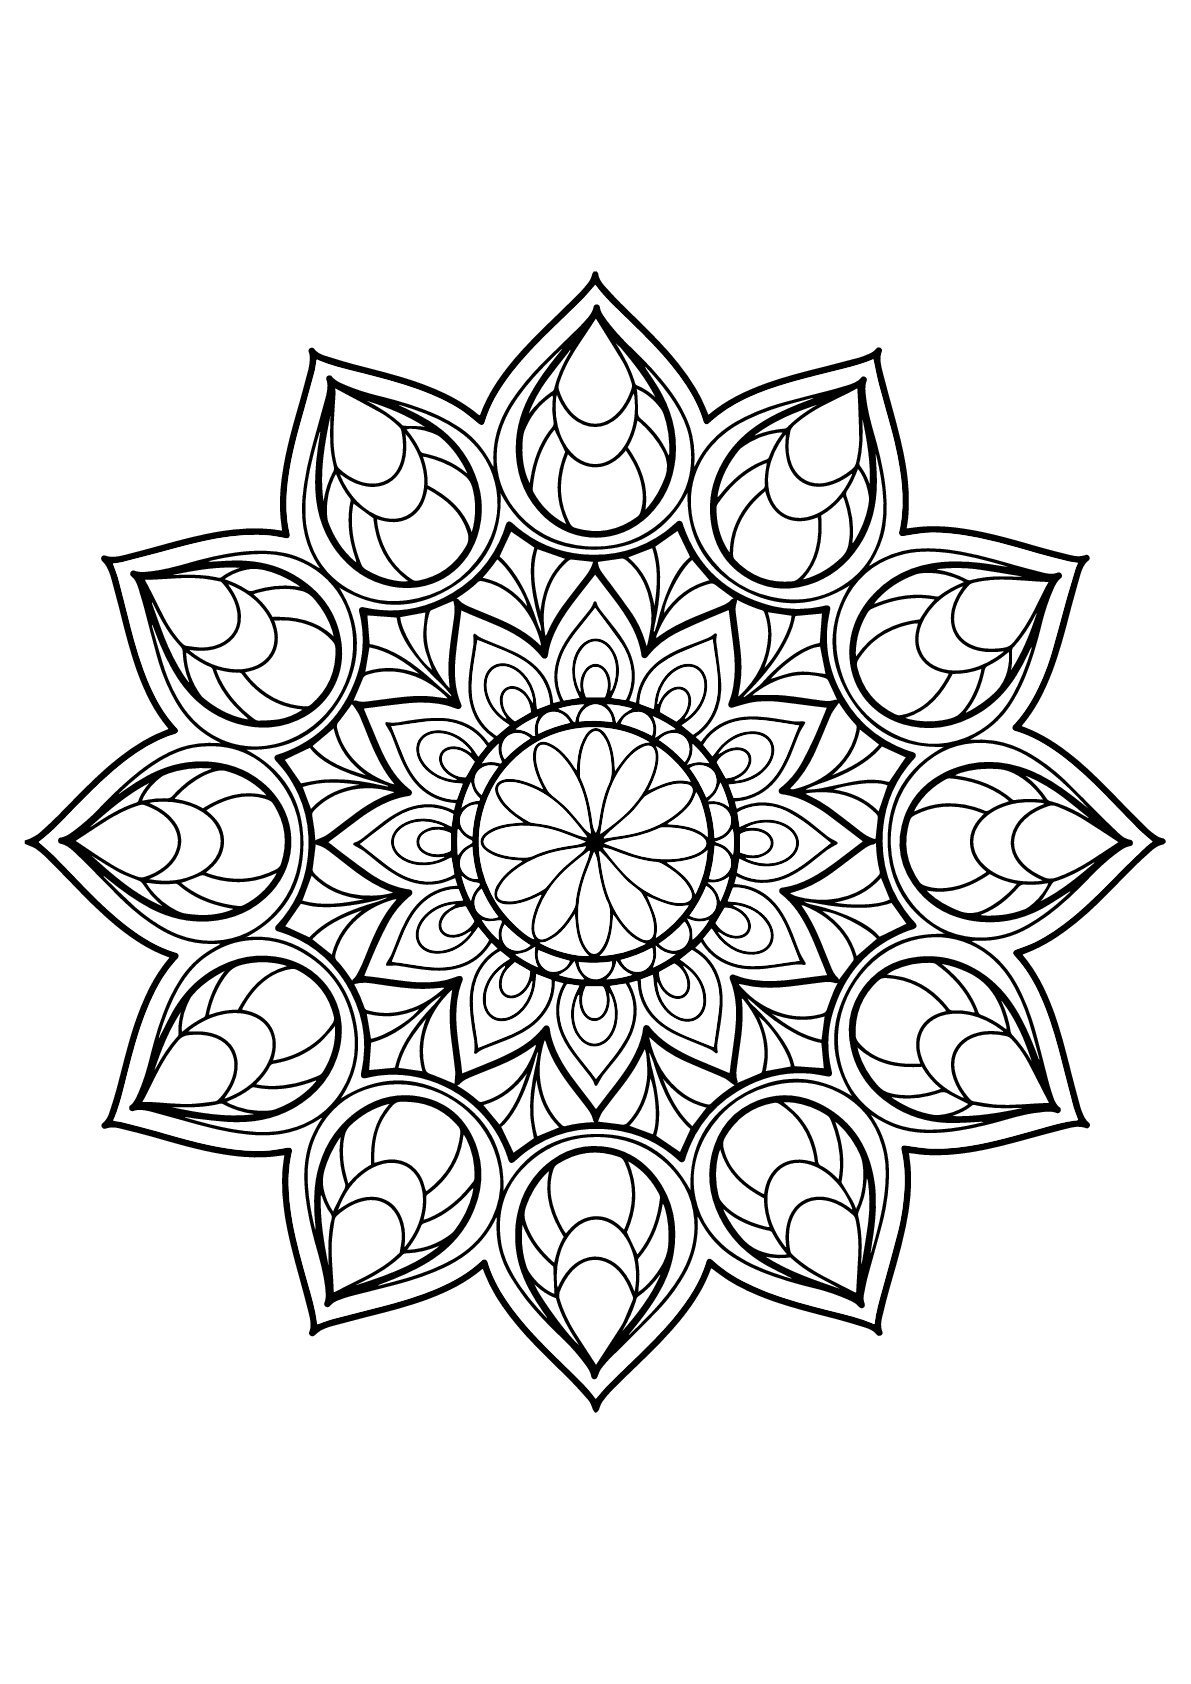 Mandala magnífica do Livro para colorir grátis para adultos